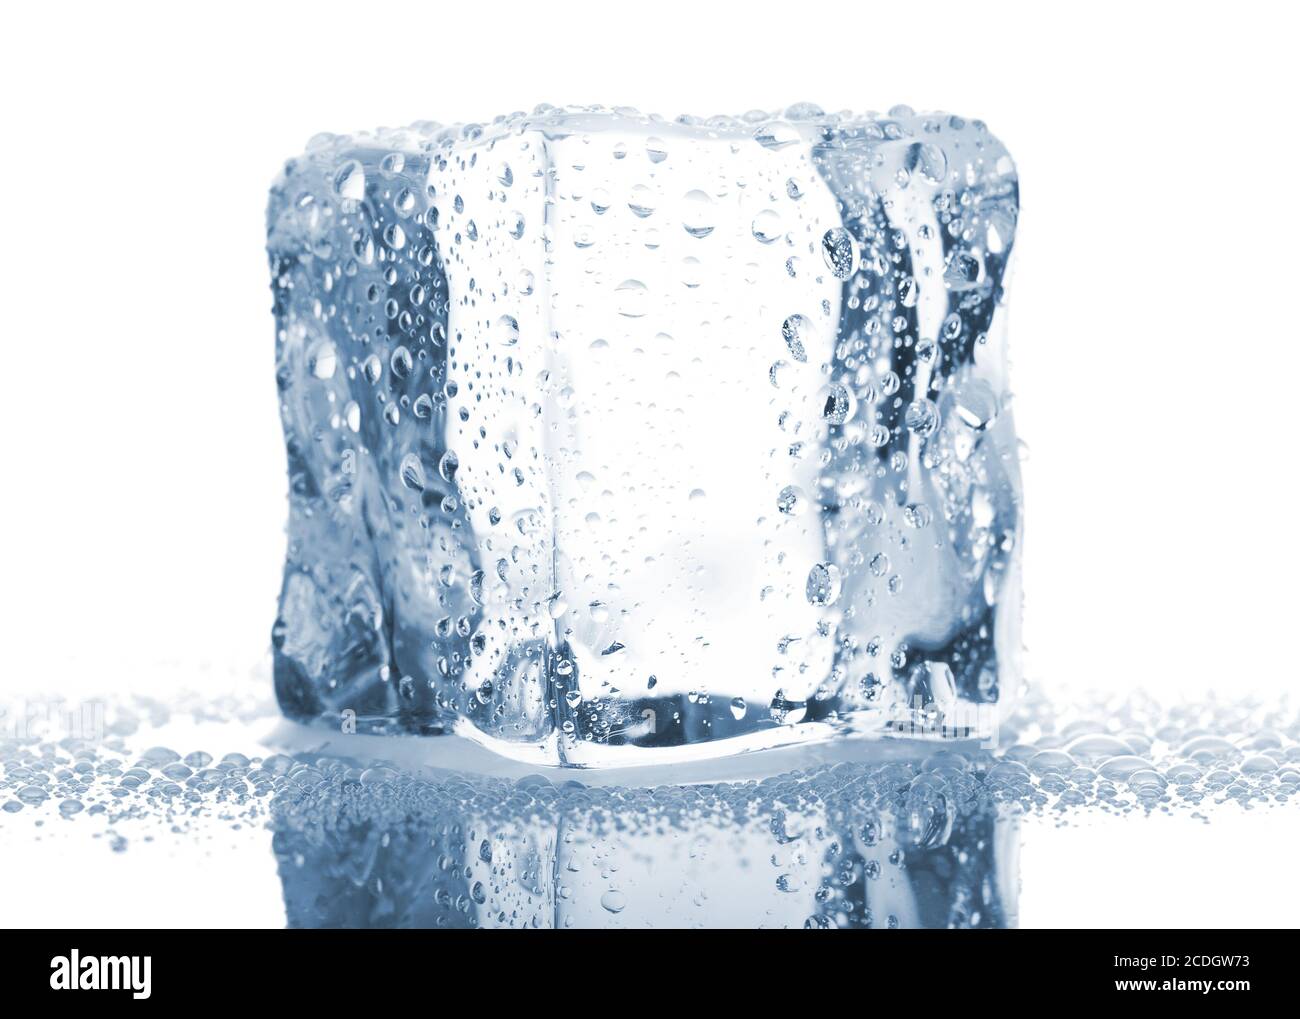 Un seul cube de glace avec gouttes d'eau Banque D'Images